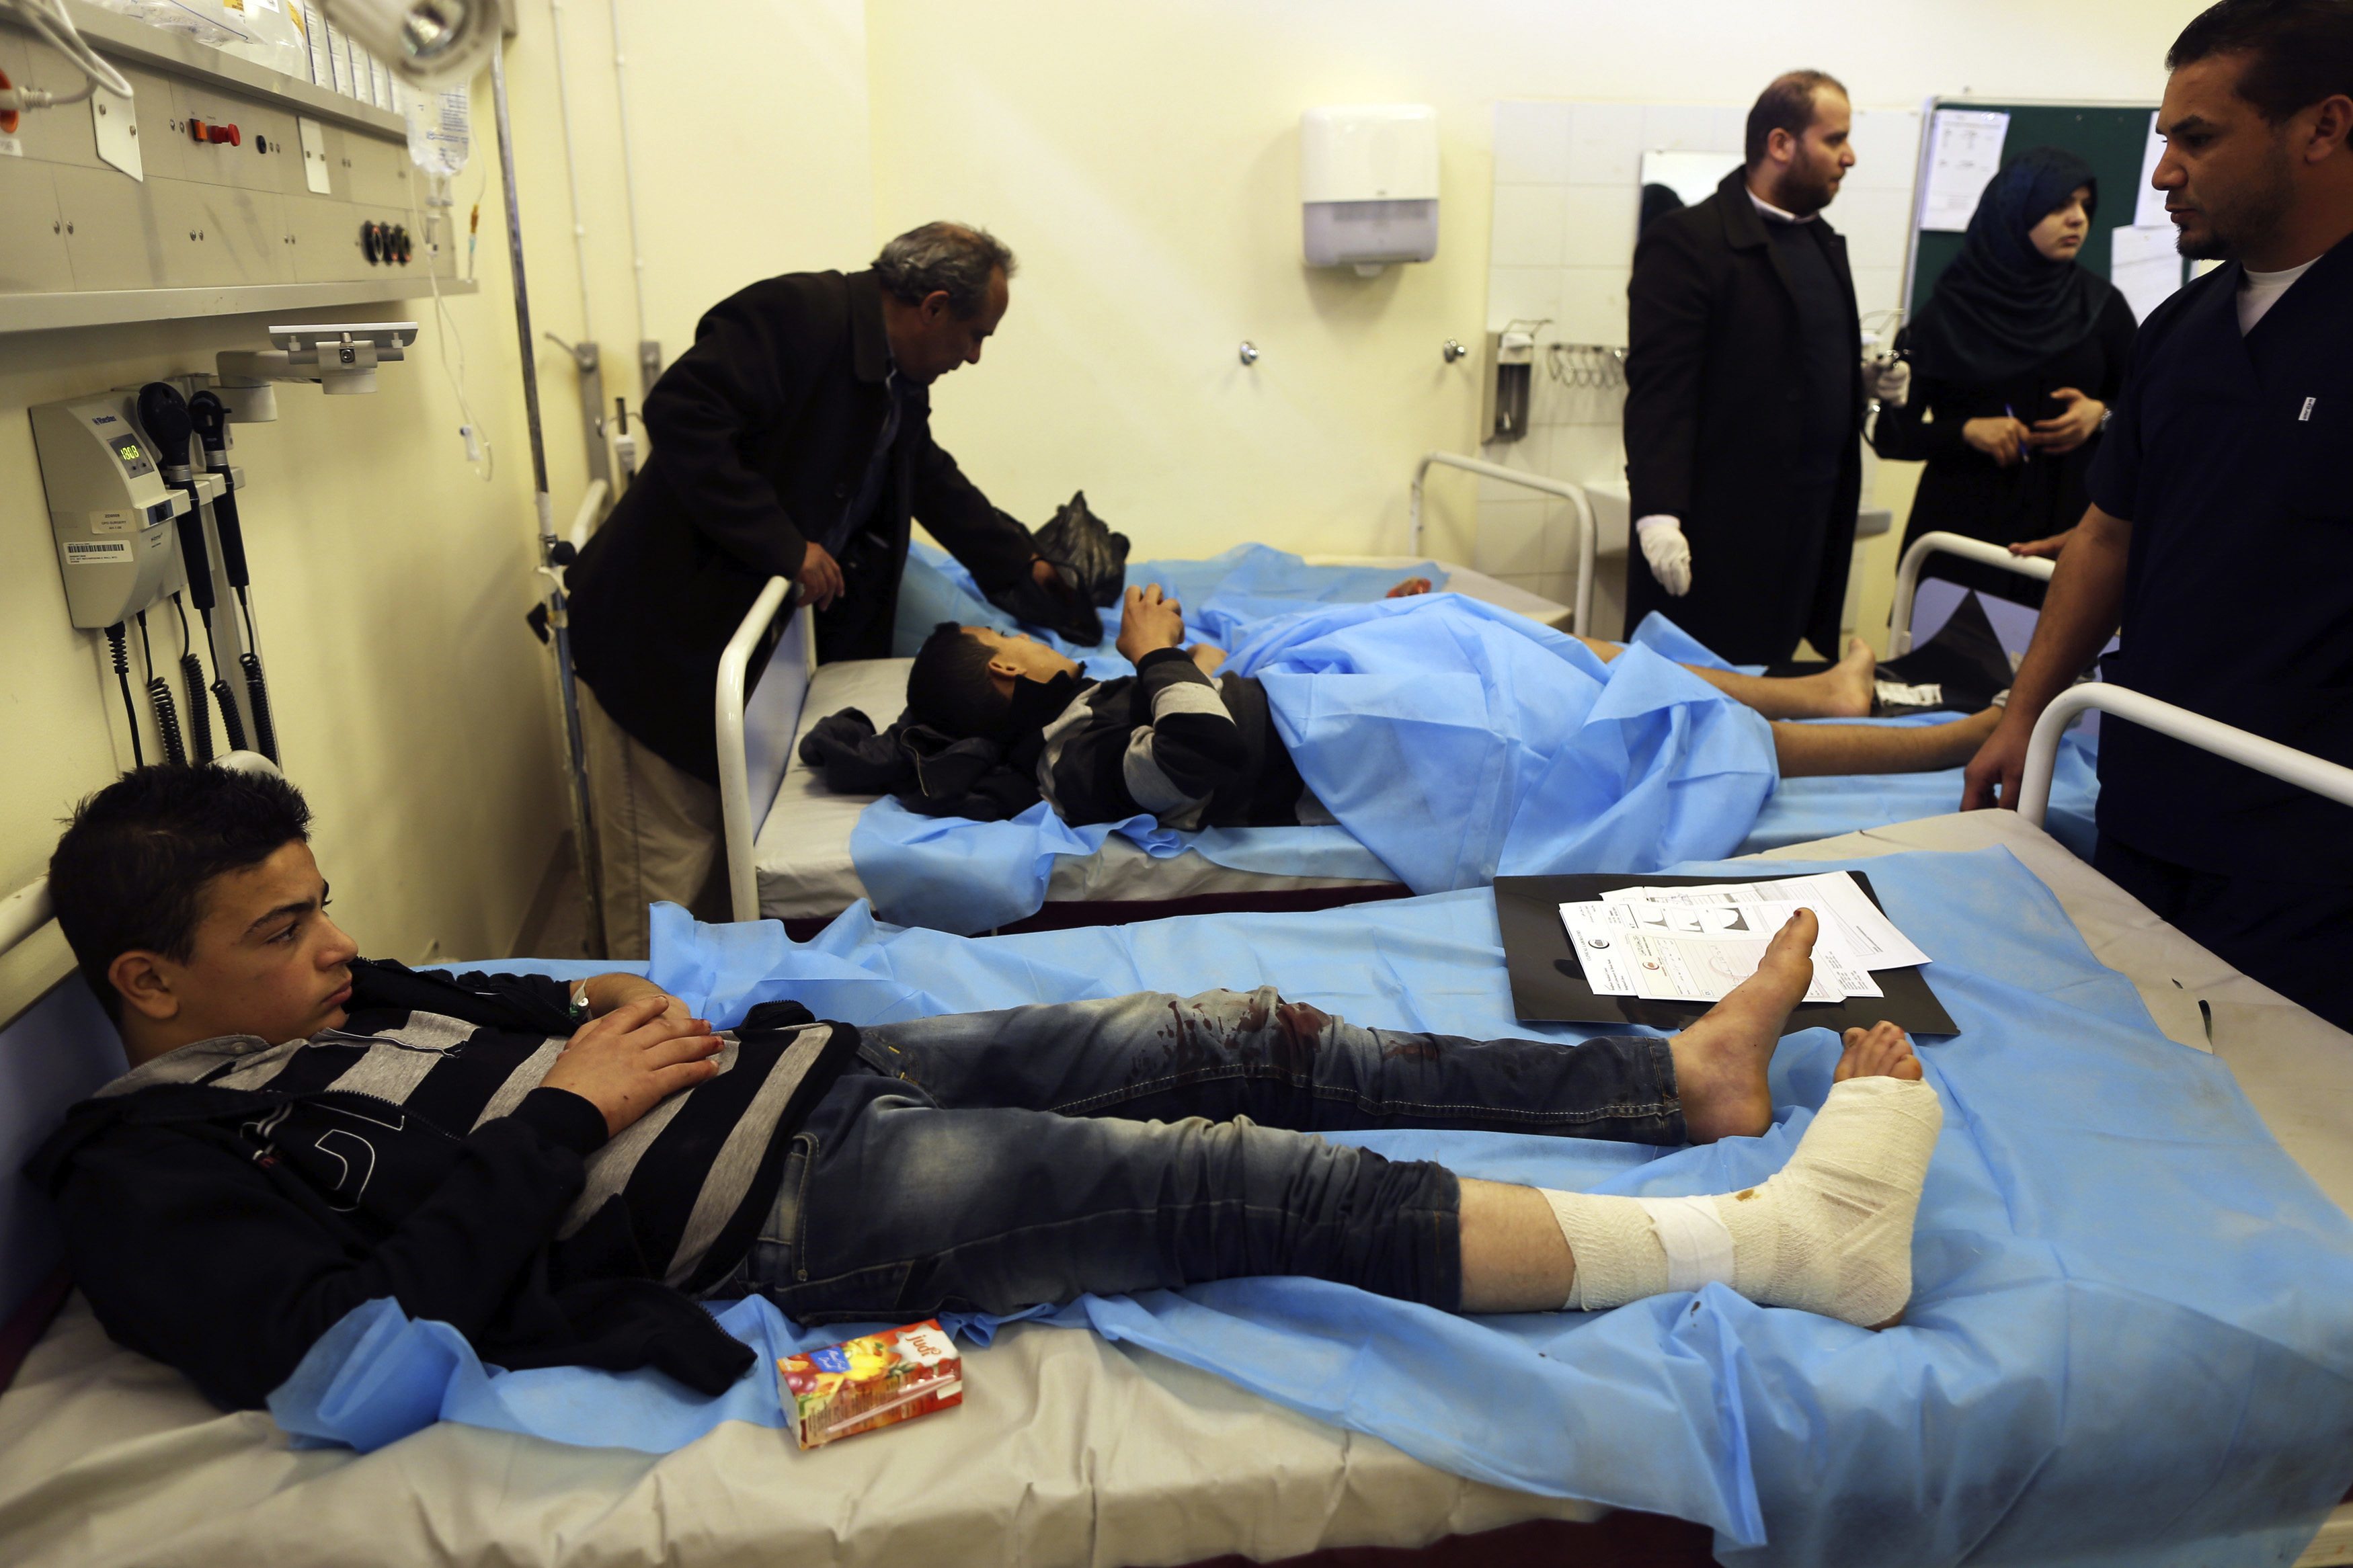 Βόμβα σε σχολείο της Λιβύης – 12 παιδιά τραυματίστηκαν